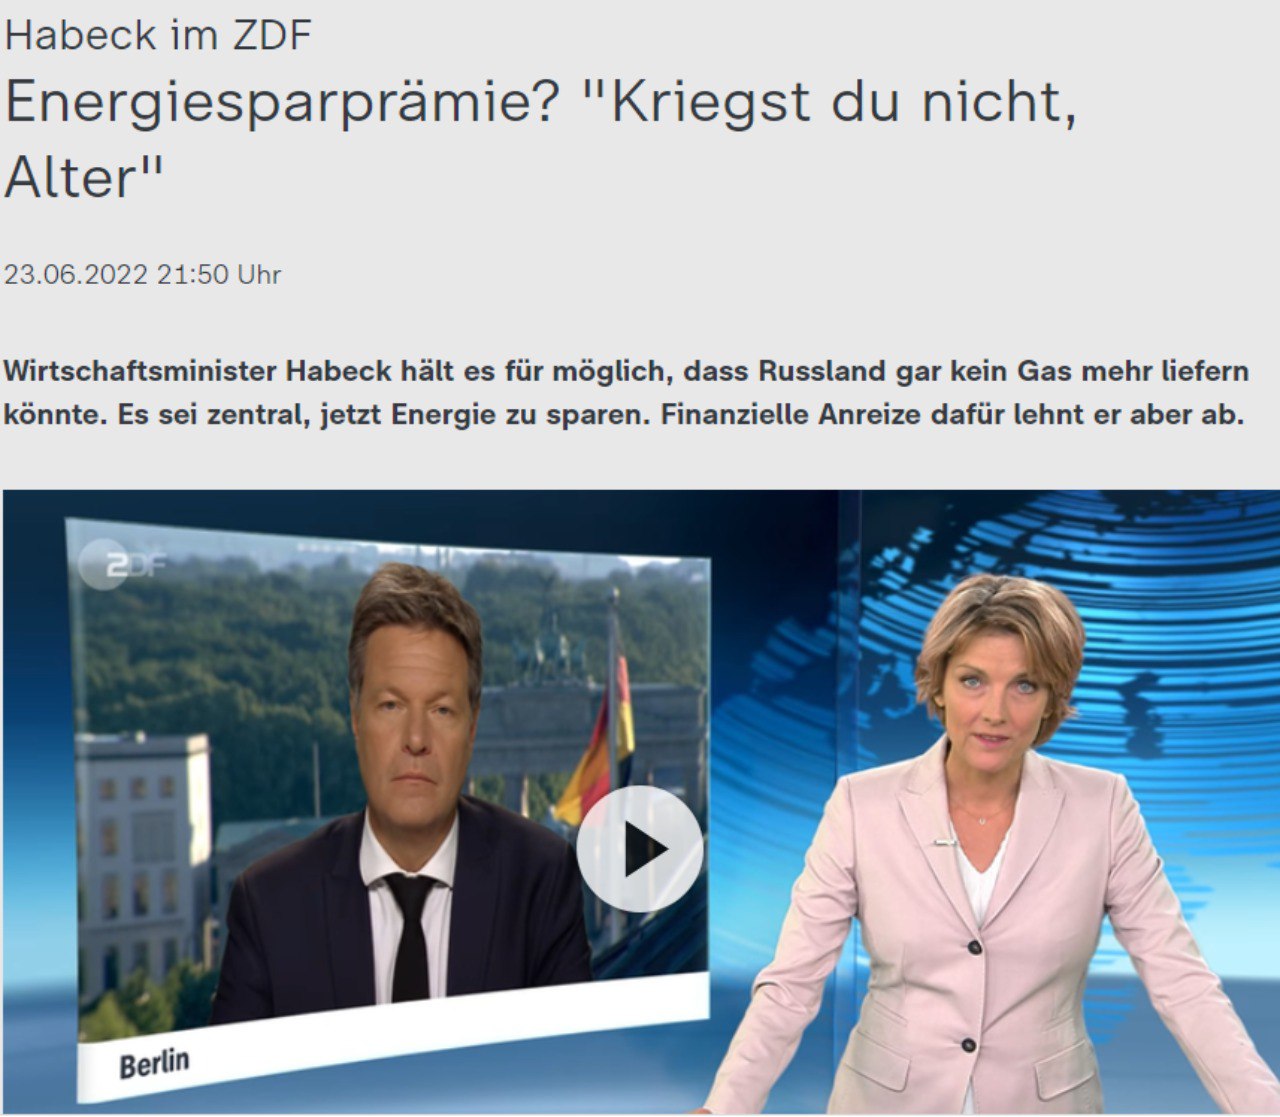 Скриншот с сайта ZDF 